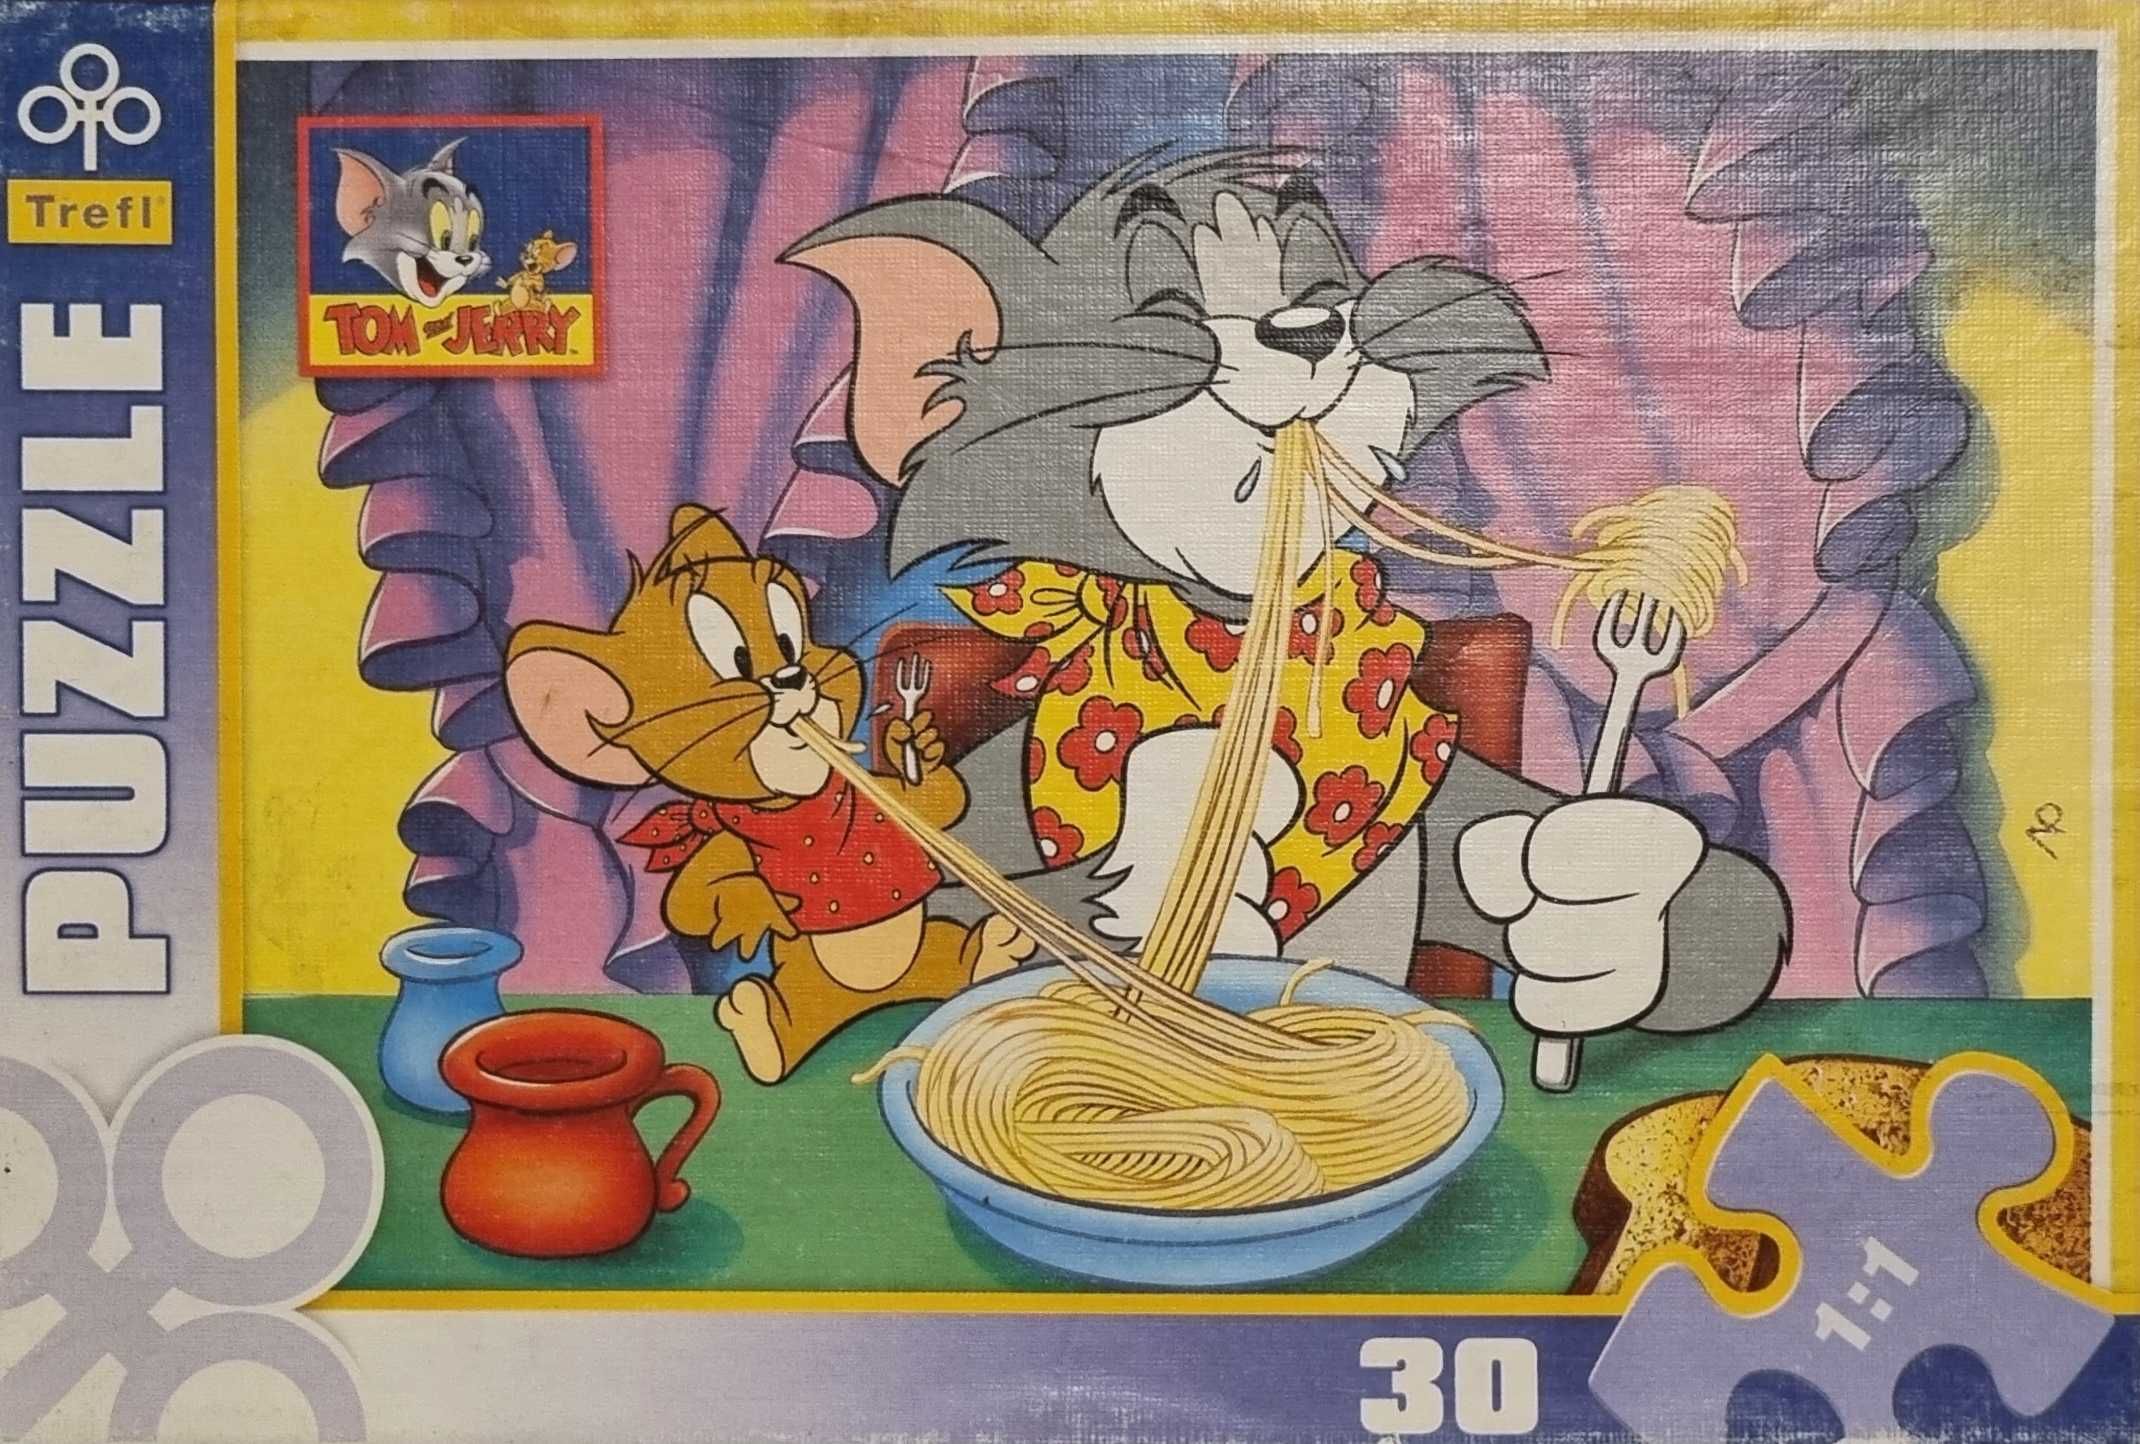 Puzzle Tom i Jerry - 30 elementów - wiek 3+ /Trefl